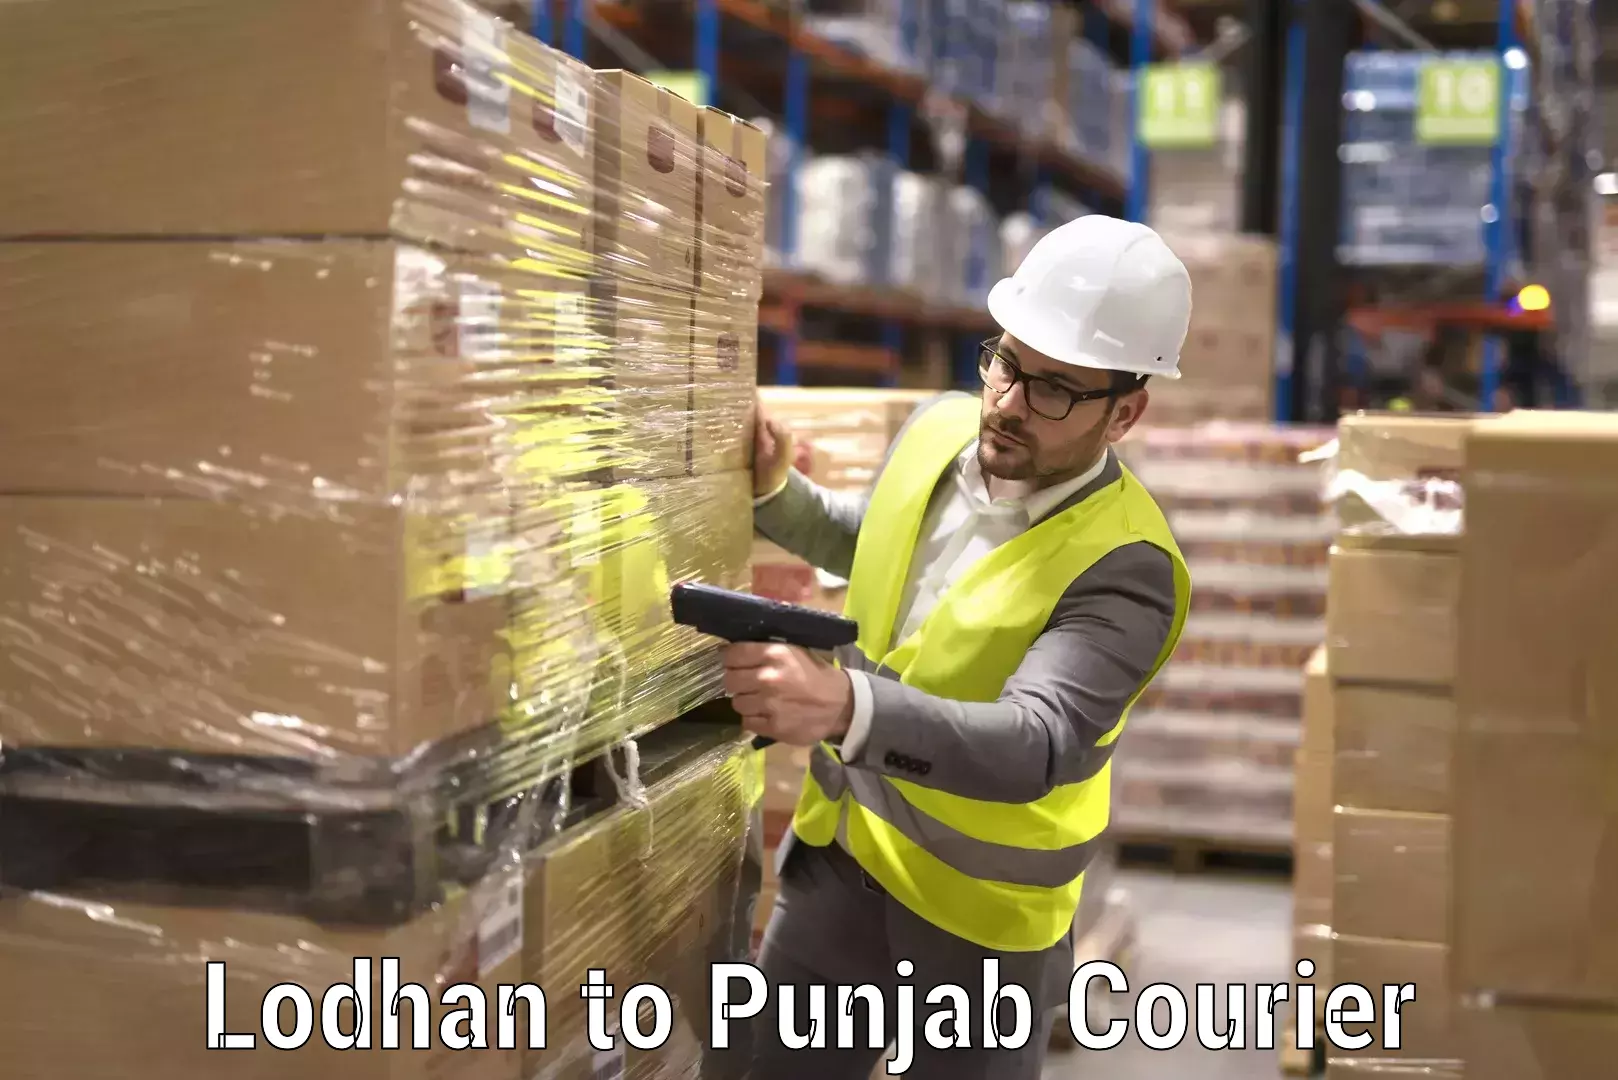 Professional furniture transport Lodhan to Punjab